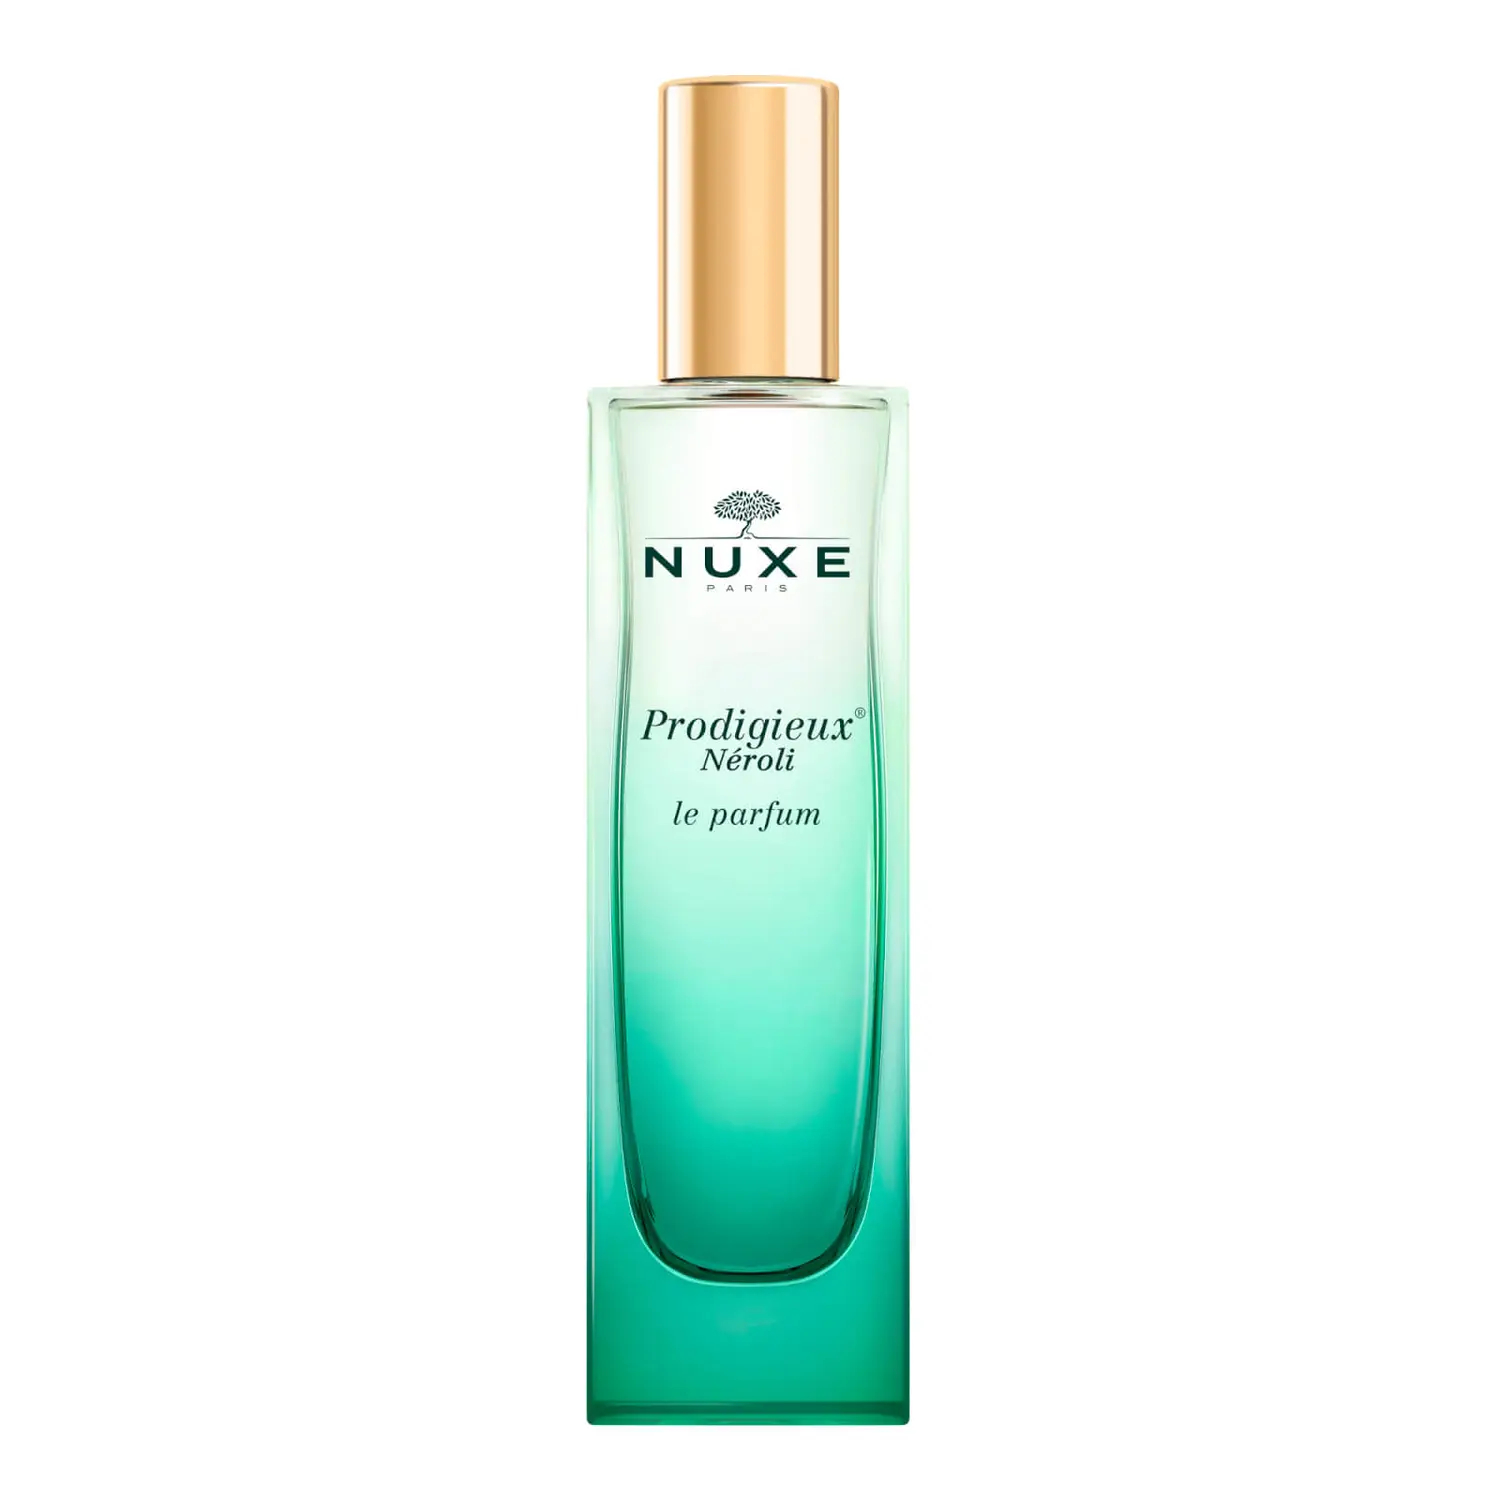 Image of Prodigieux(R) Néroli Le Parfum Nuxe 50ml